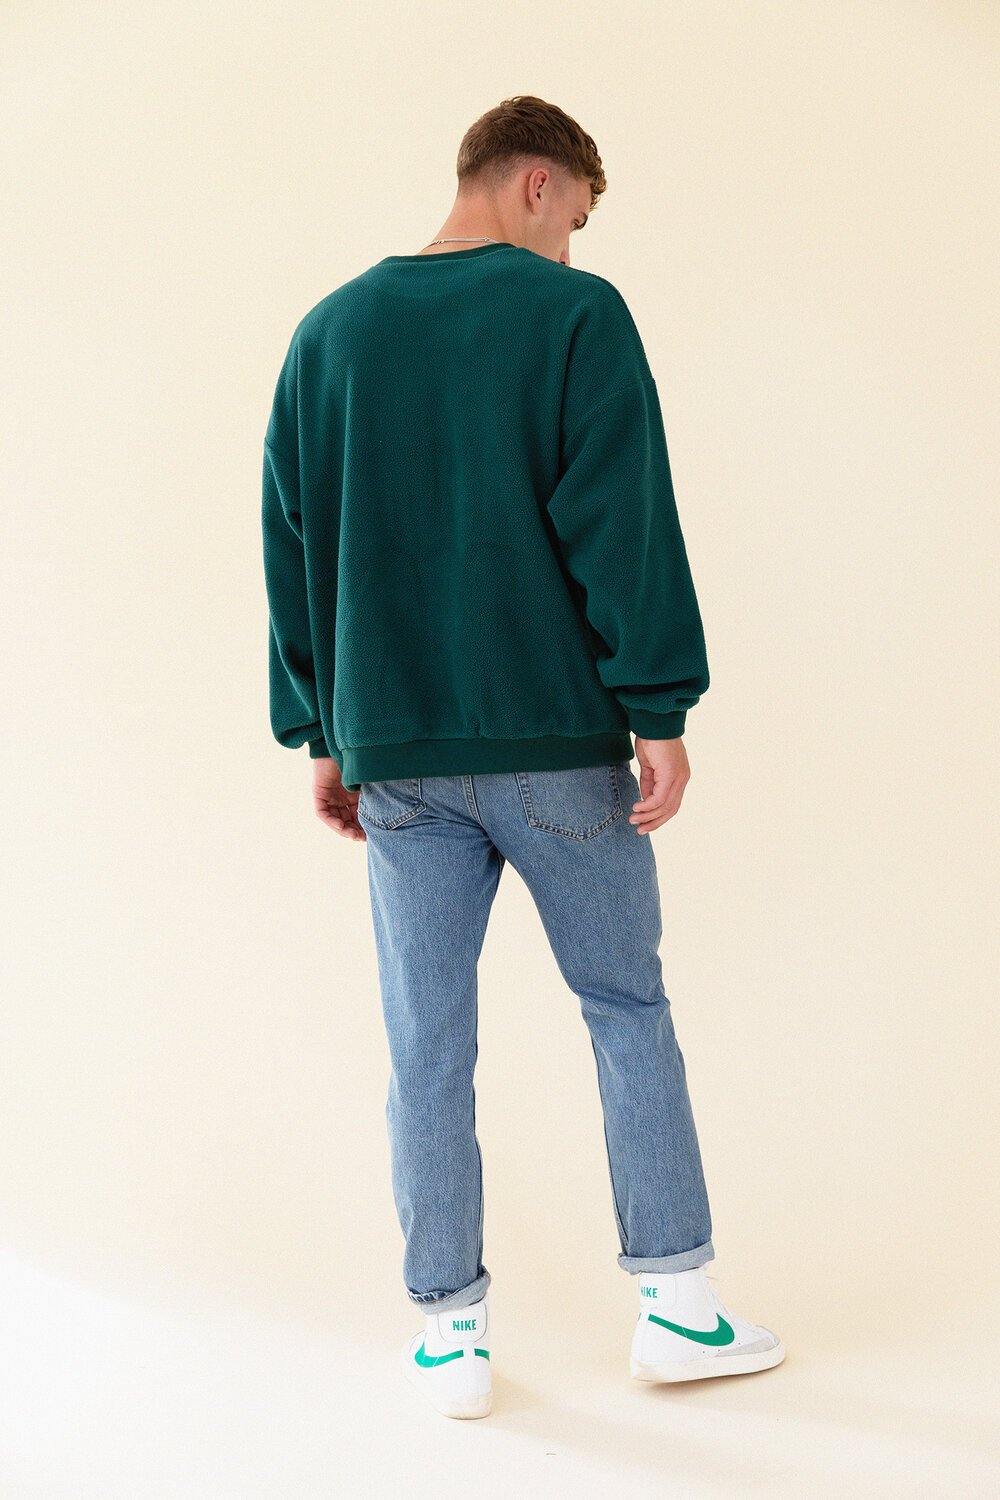 bound 'REVERSE FLEECE' Oversized Sweatshirt – UN:IK Clothing